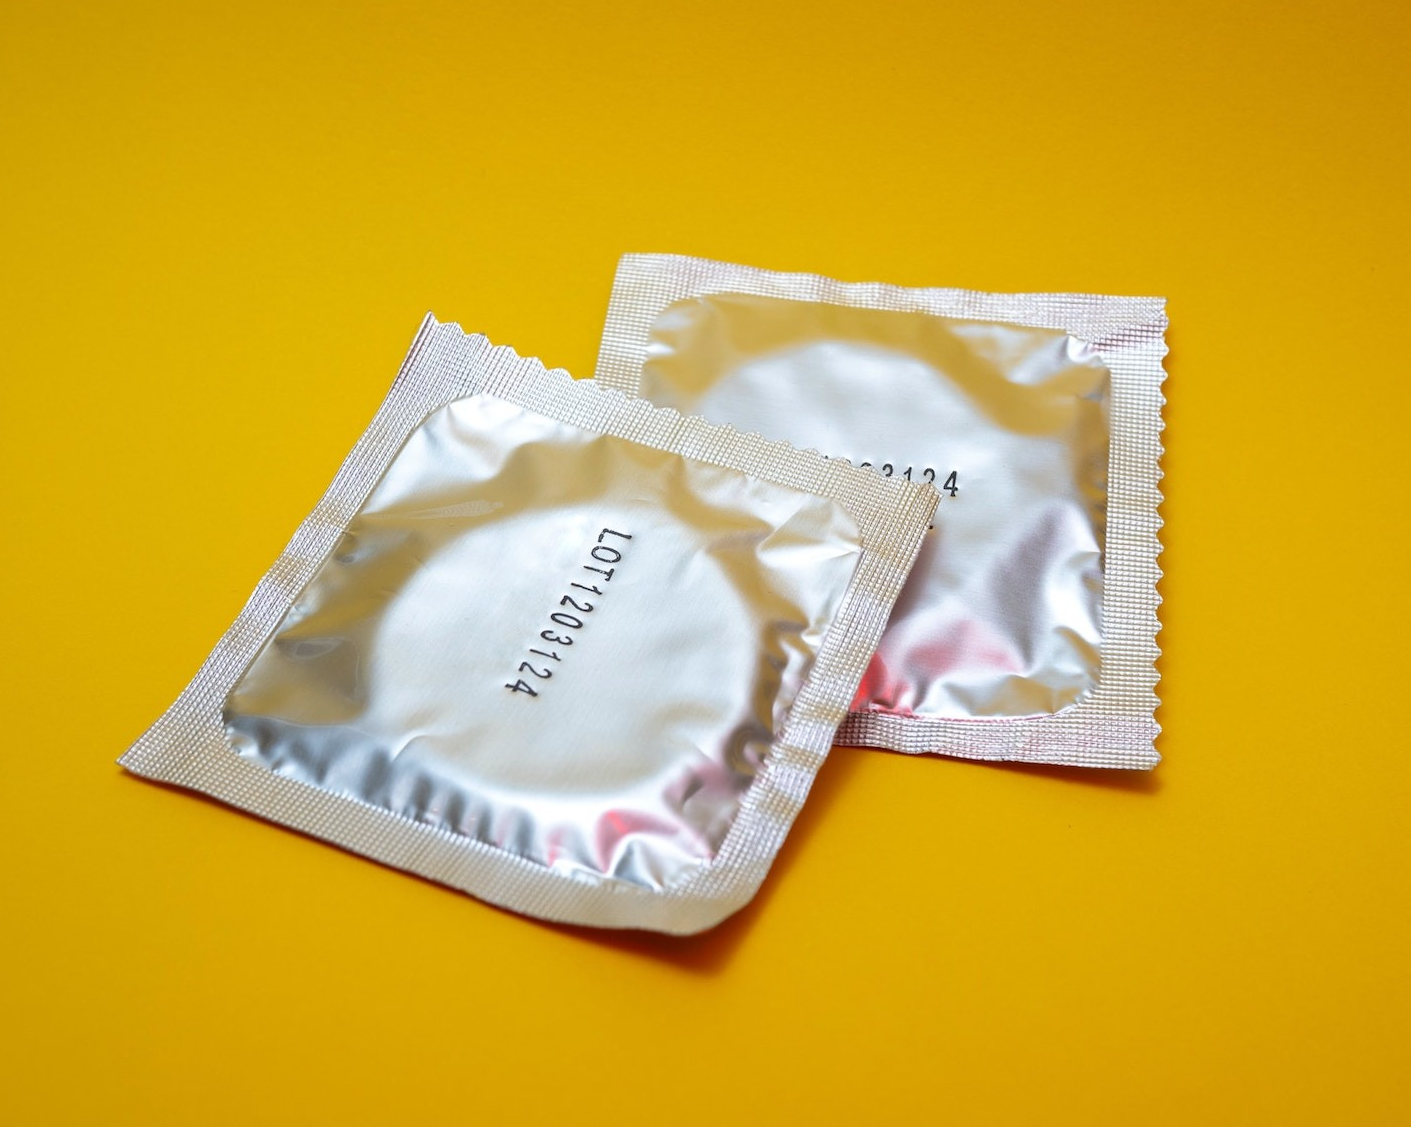 Condoms — for free!